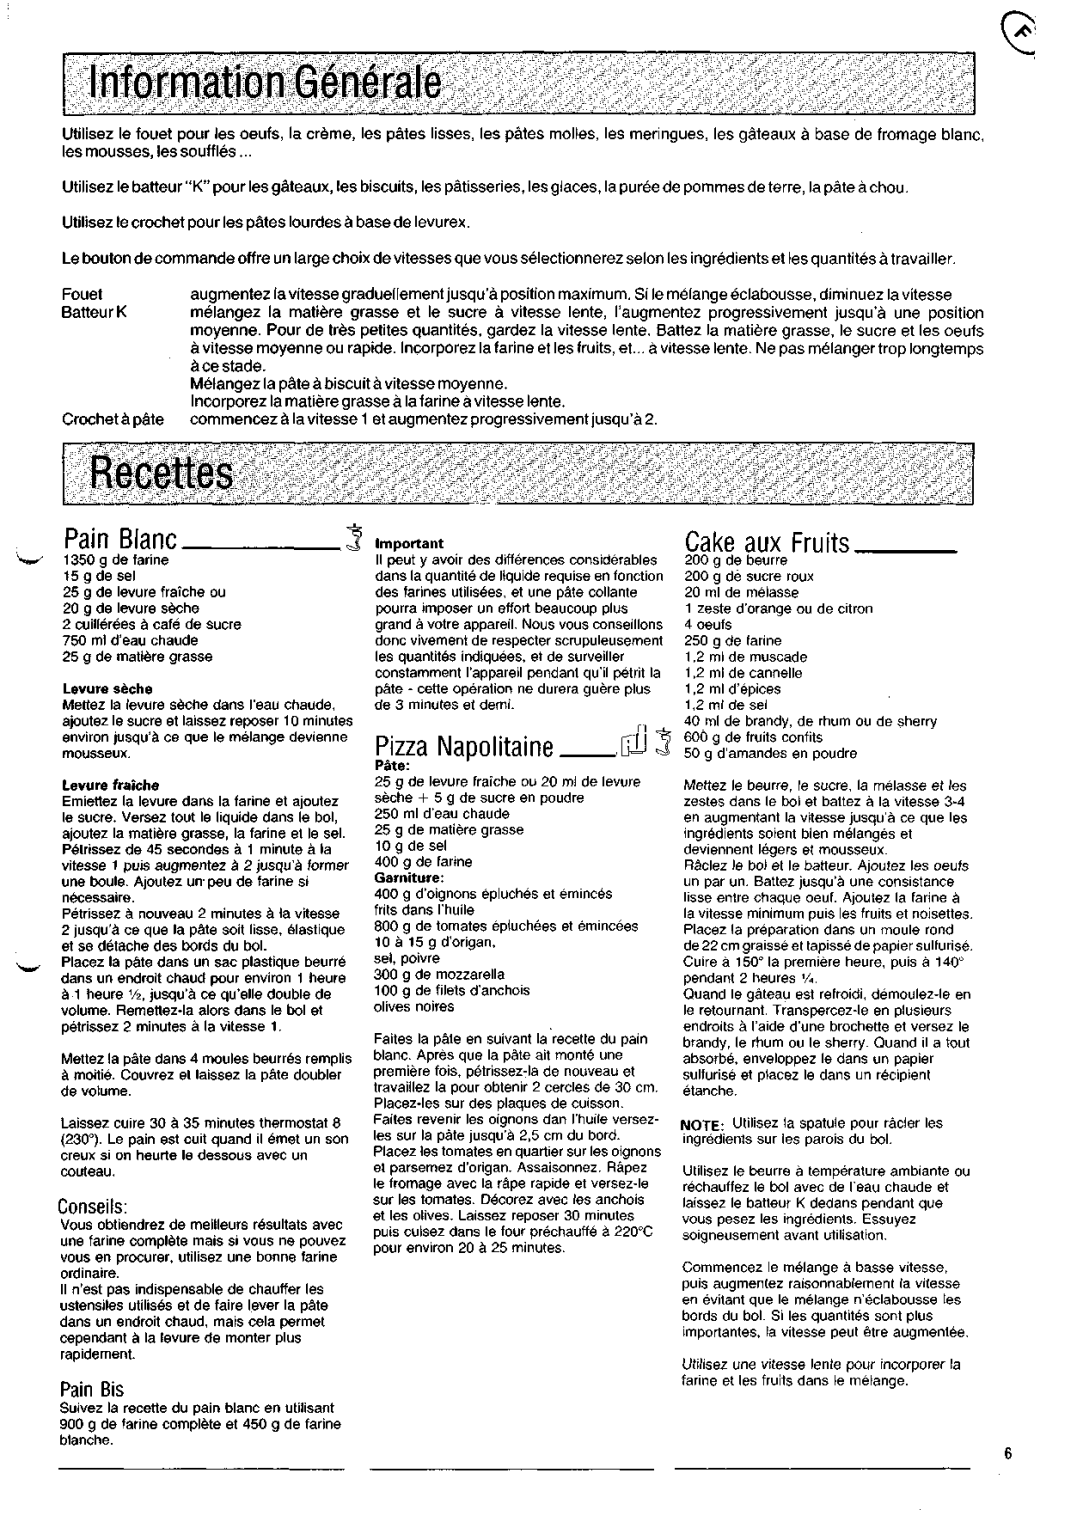 Kenwood KM200 manual Information Generale, Recettes, Pain Blanc, Pizza Napolitaine, Cake auxFruits, Conseils, PainBis, Pate 